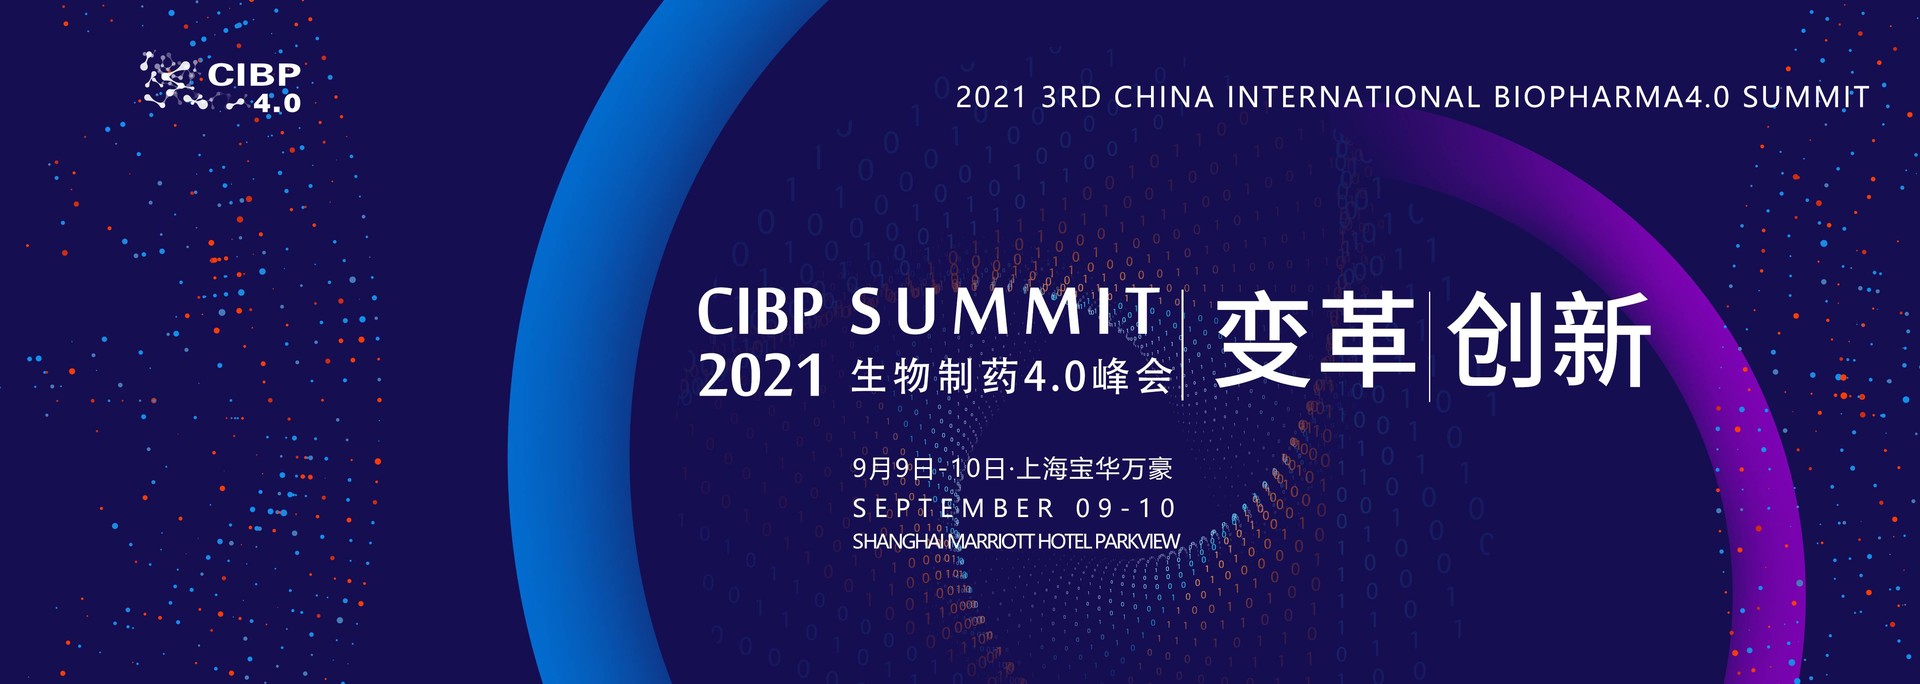 2021第三届中国国际生物制药4.0峰会-英文站点